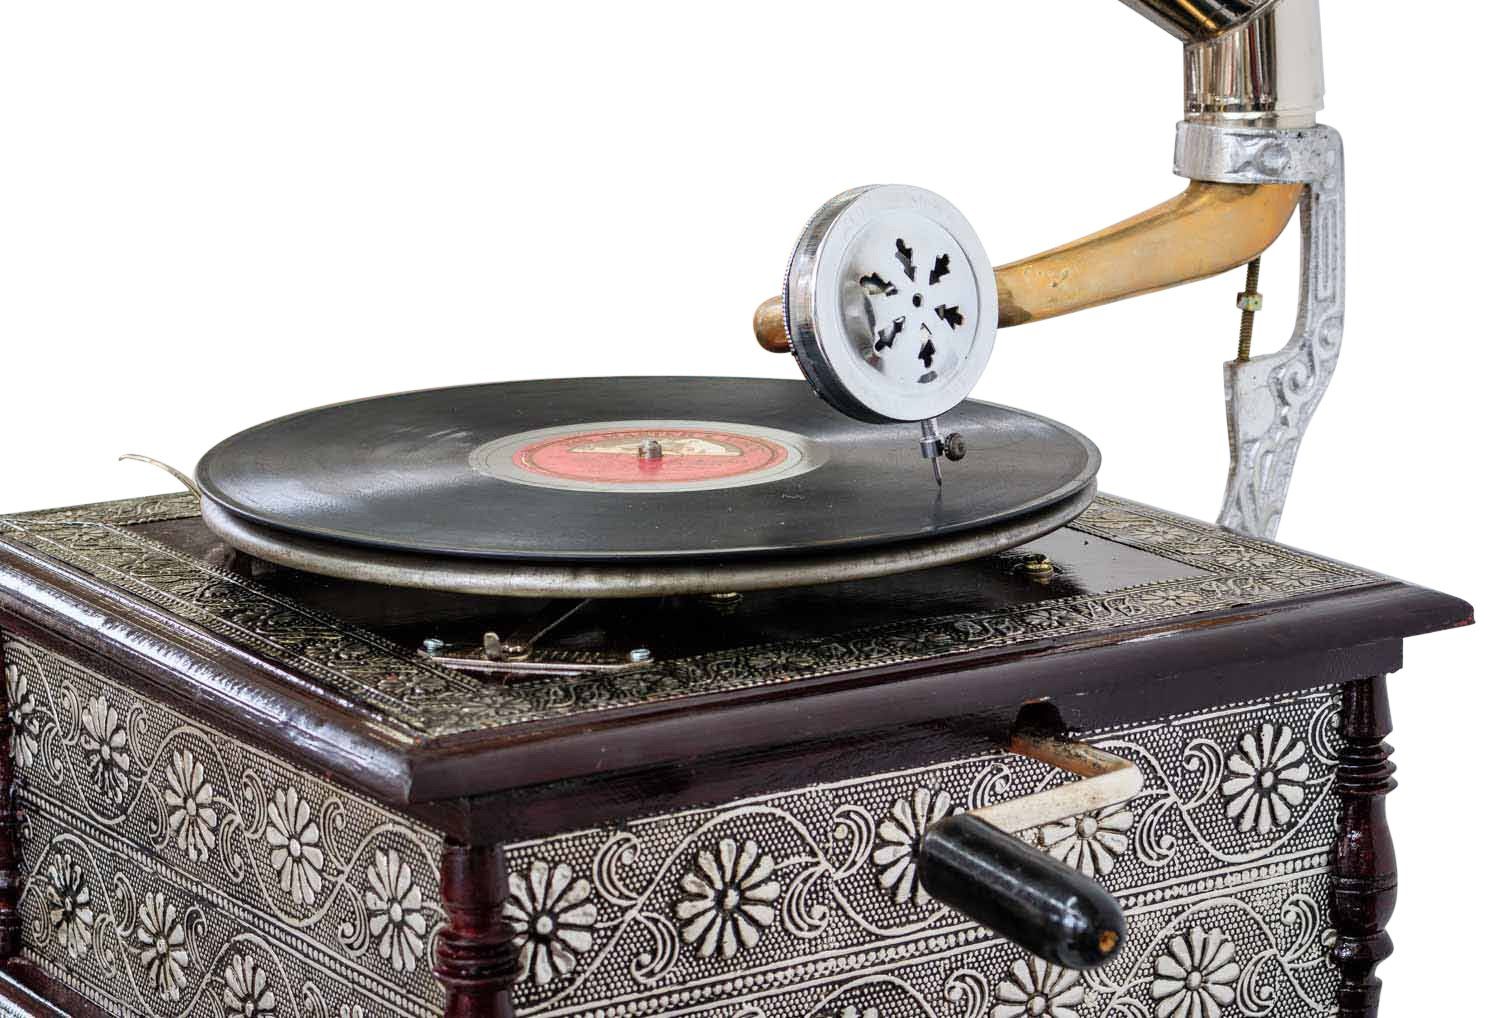 Aubaho Dekoobjekt Nostalgie Trichter (k2) Grammophon mit Dekoration Antik-Stil Grammofon